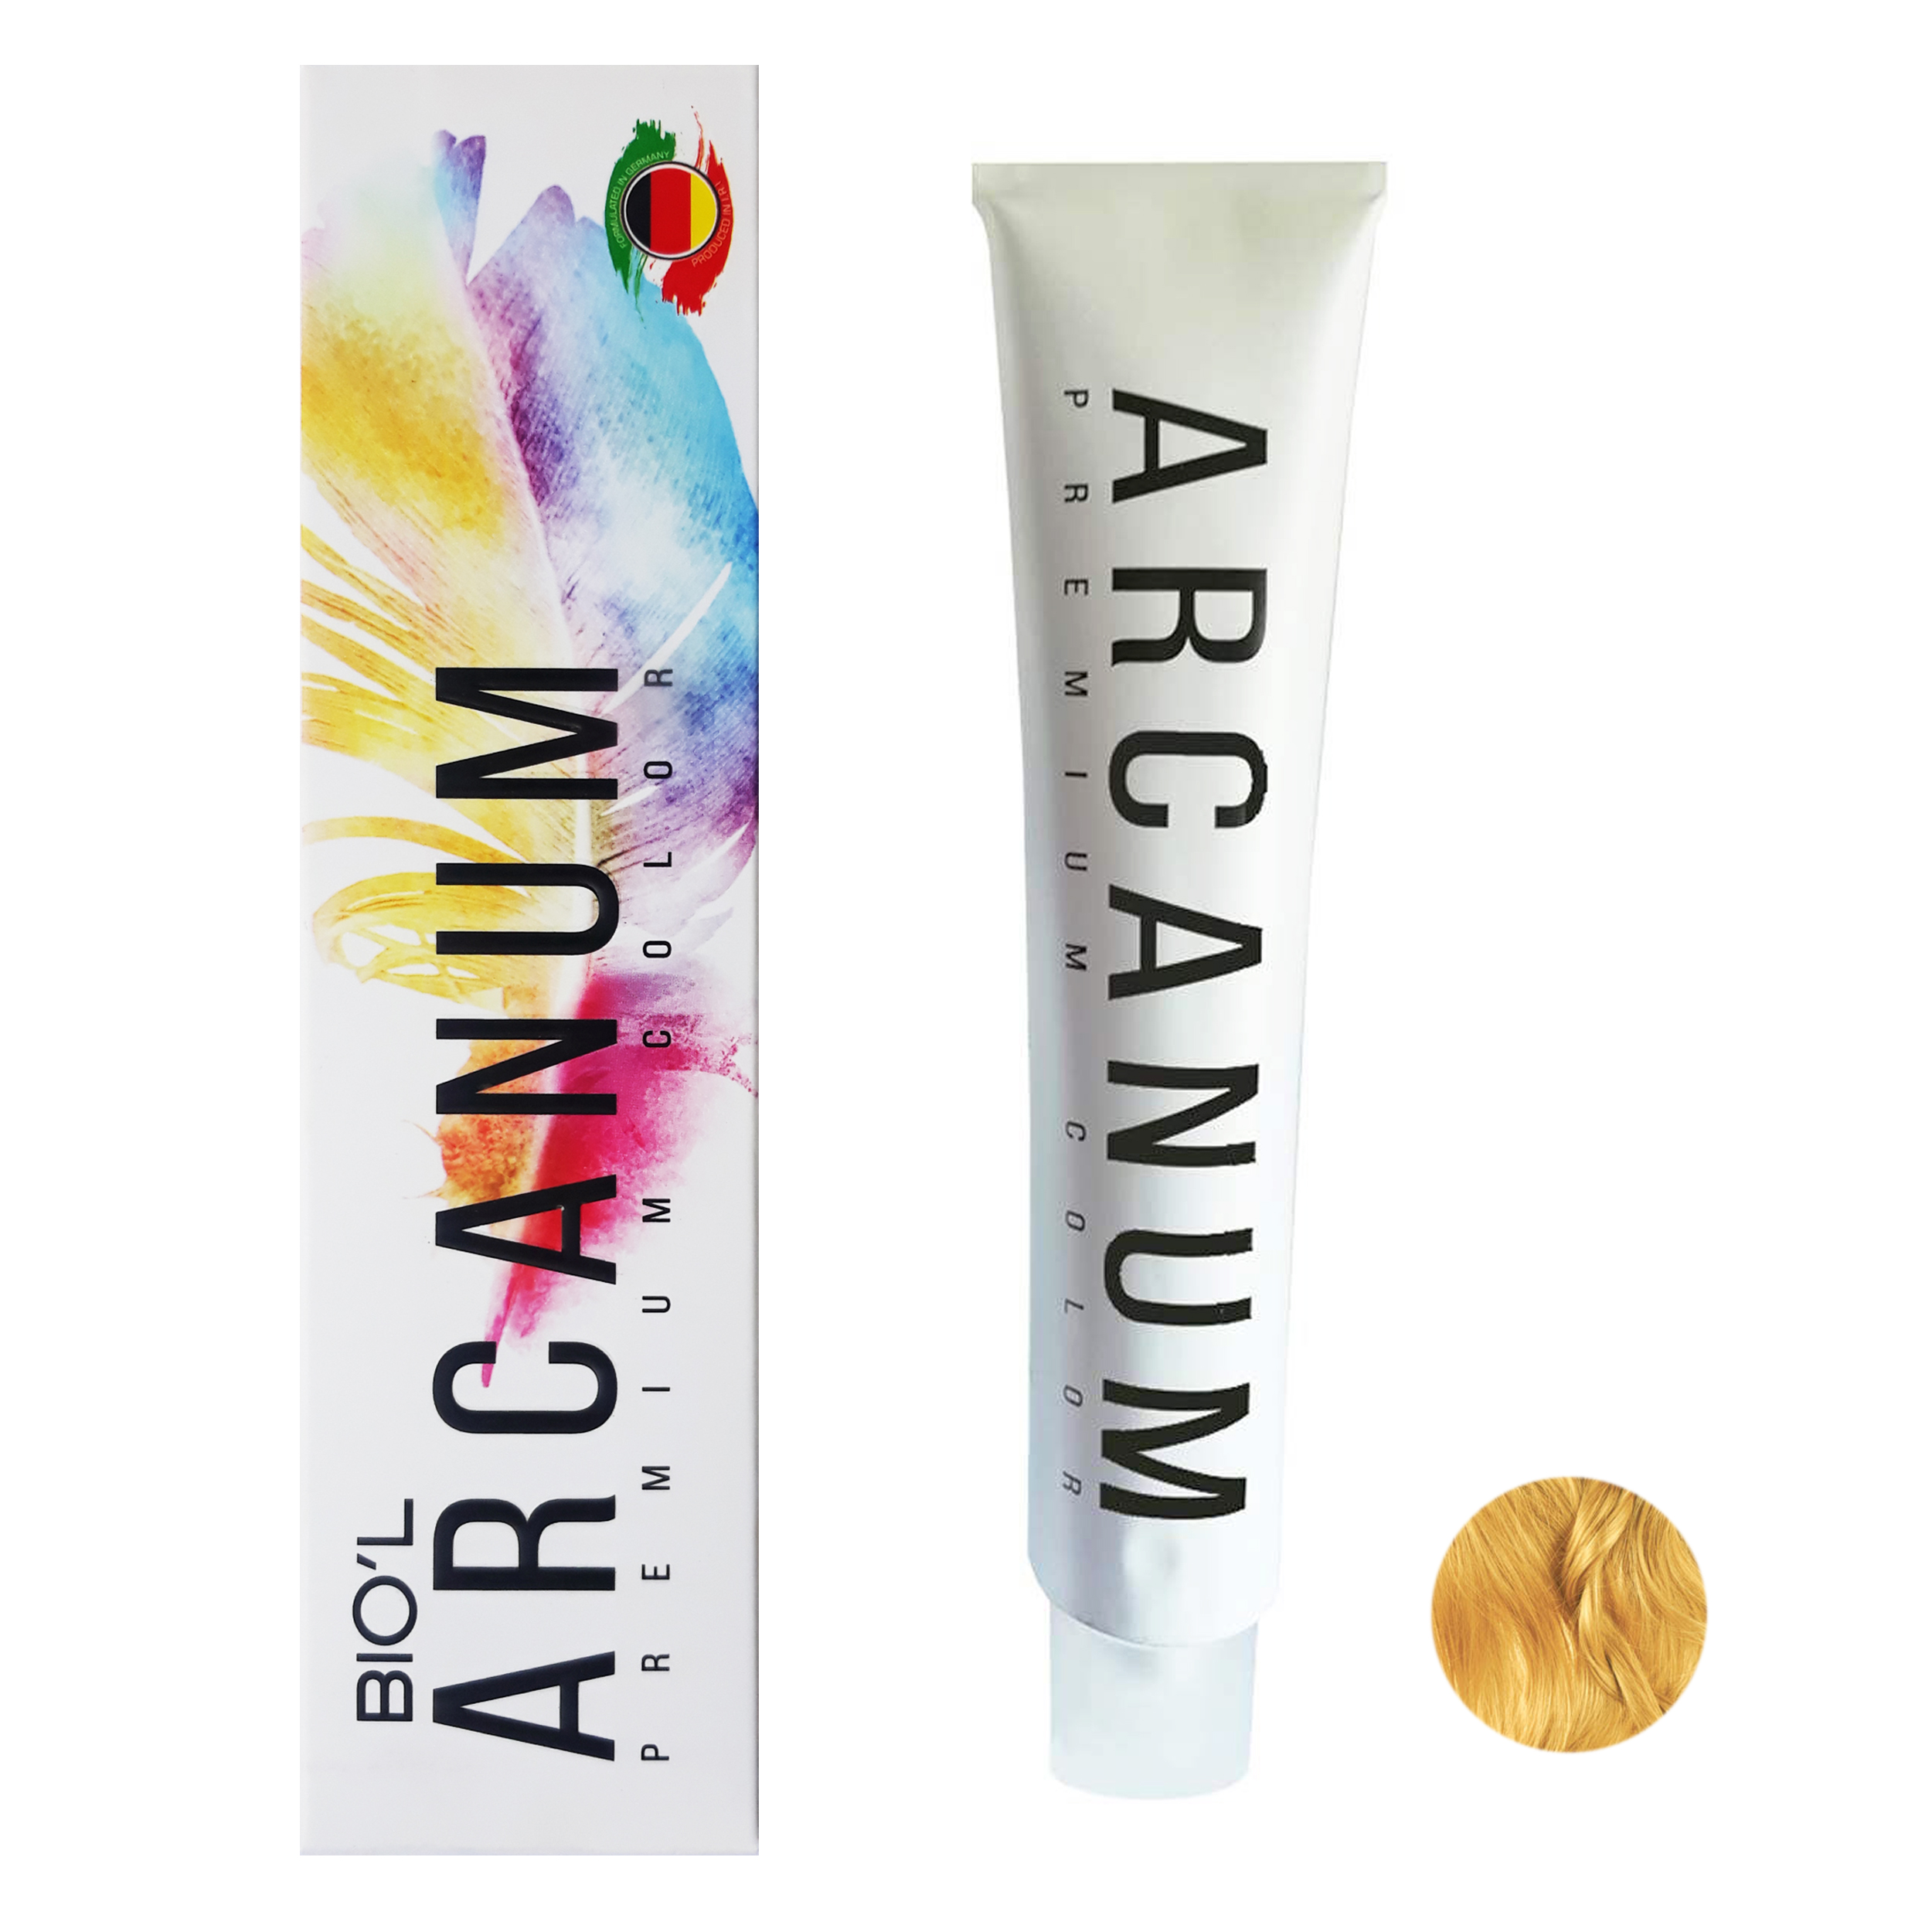  رنگ مو بیول مدل Arcanum شماره 9.34 حجم 120 میلی لیتر رنگ بلوند عسلی خیلی روشن -  - 1